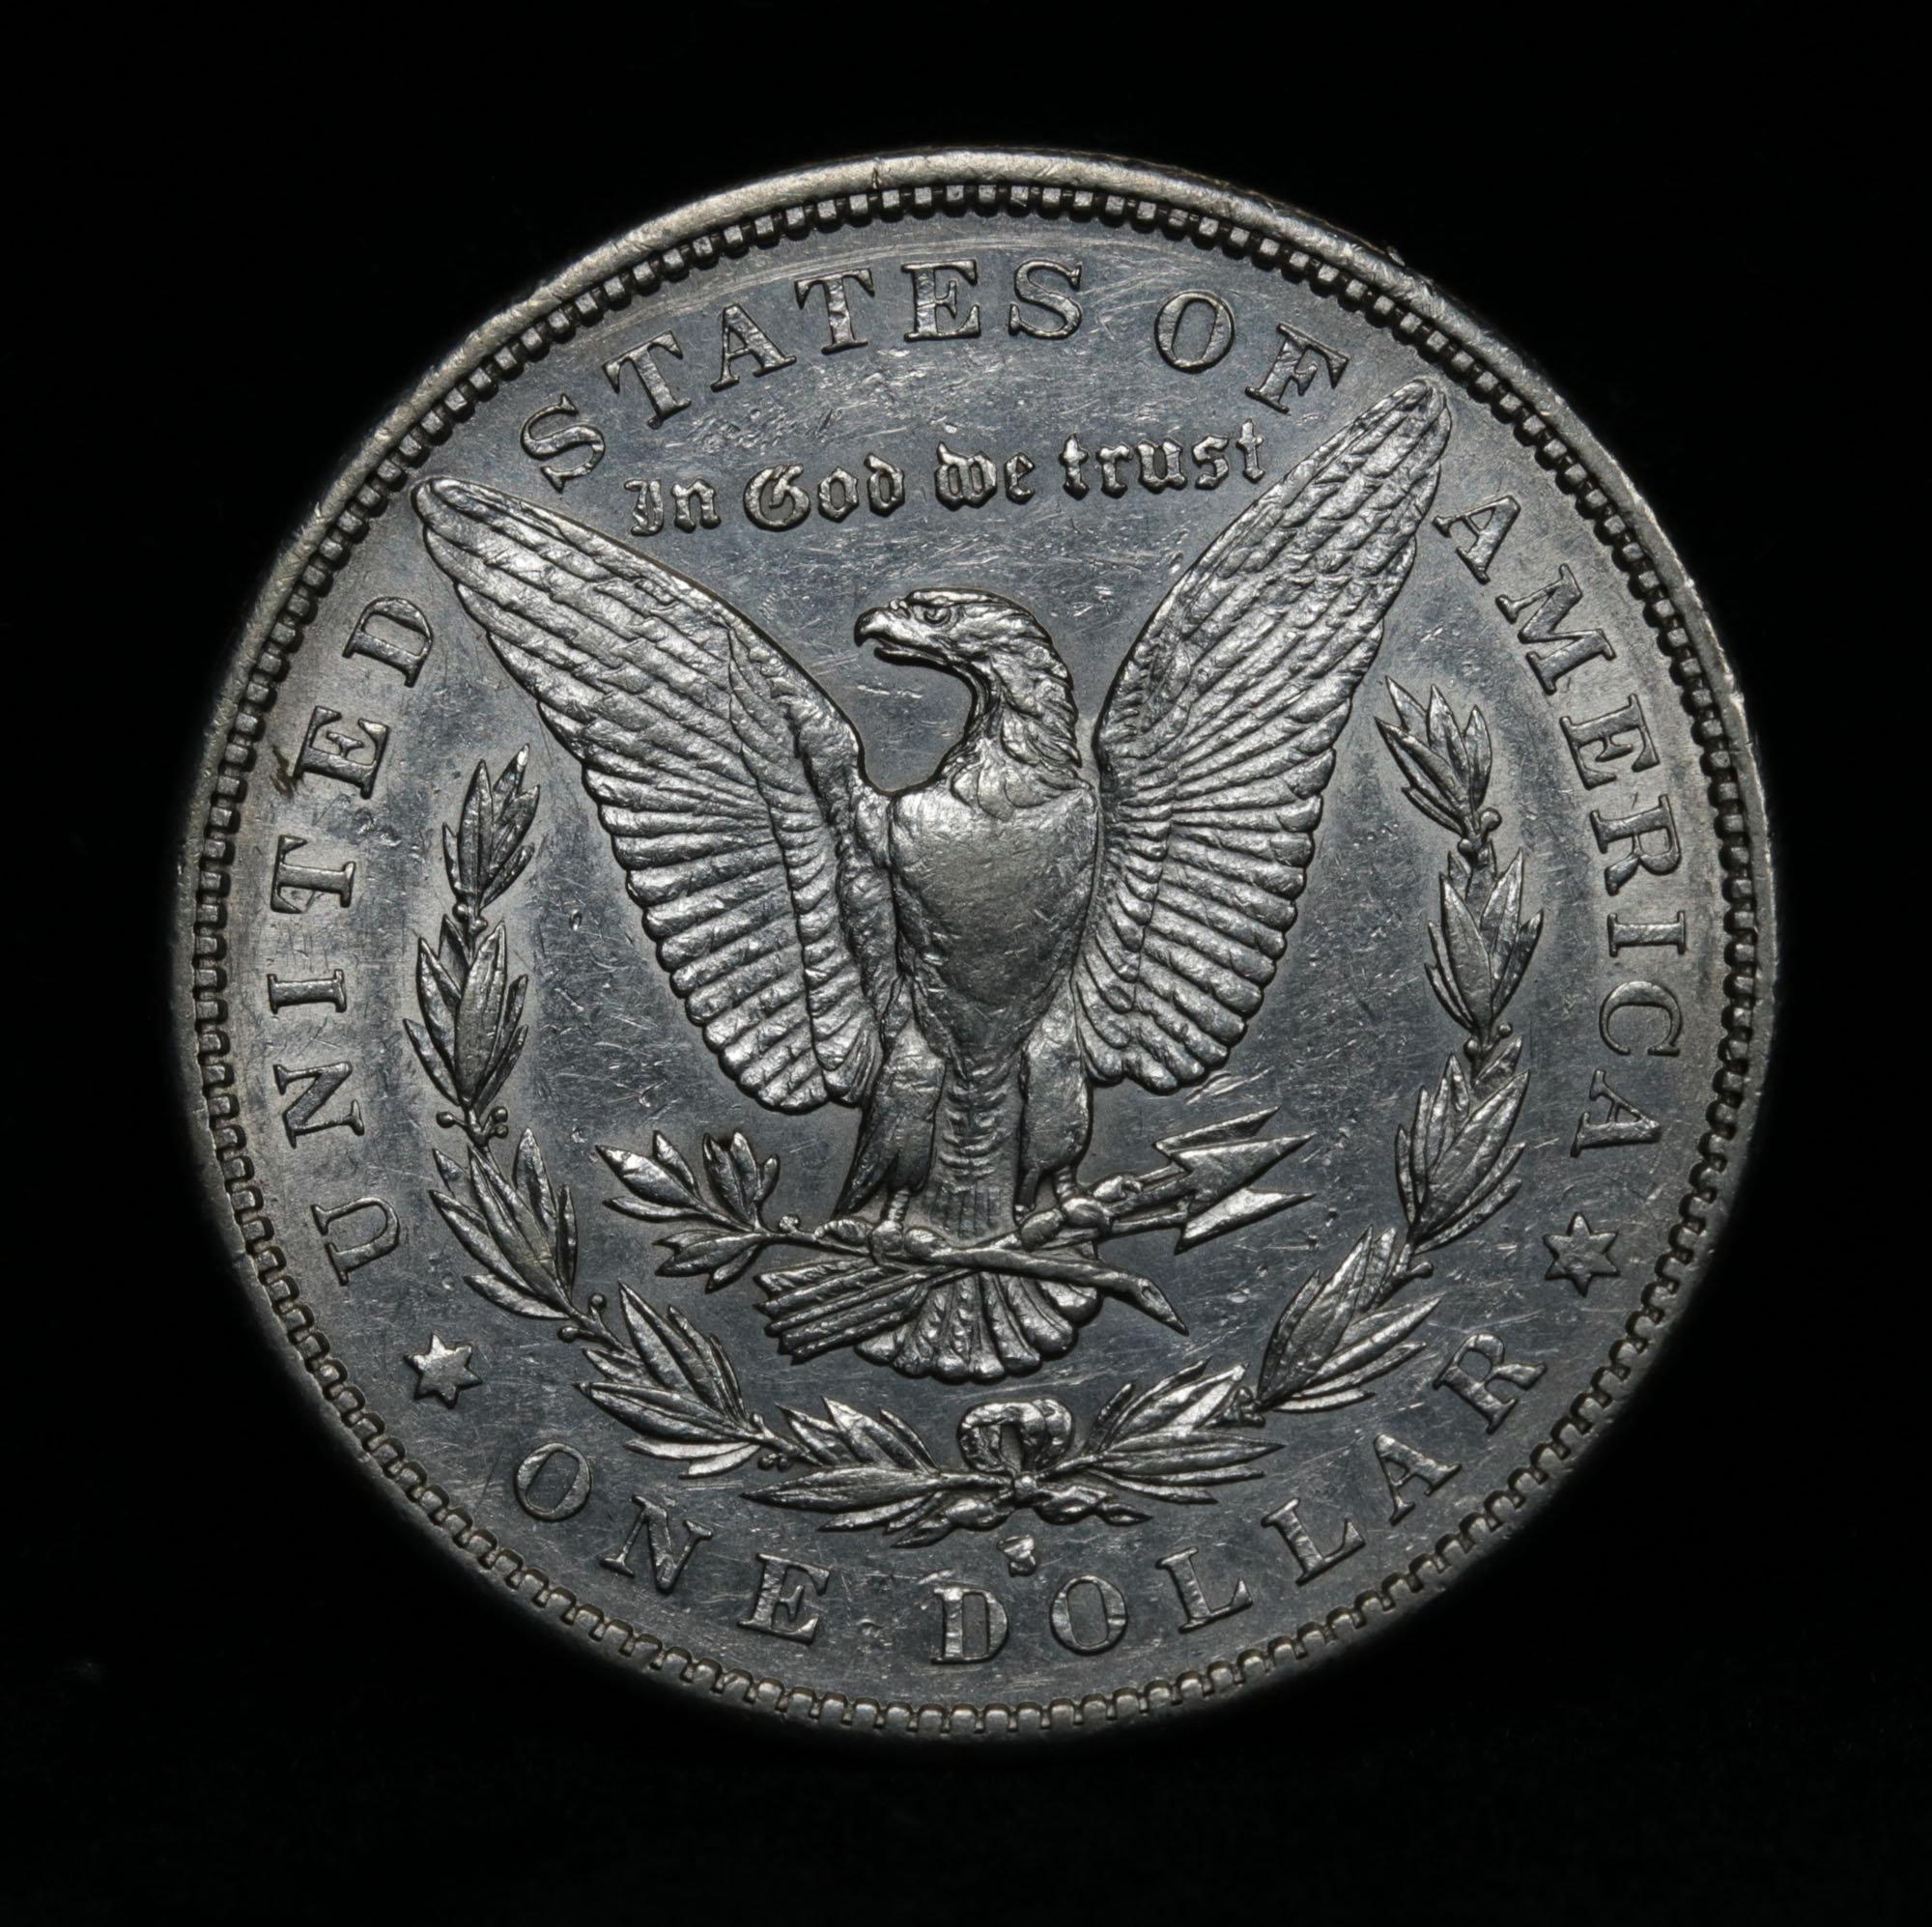 ***Auction Highlight*** Key date 1884-s Morgan Dollar $1 Graded Choice AU/BU Slider by USCG (fc)